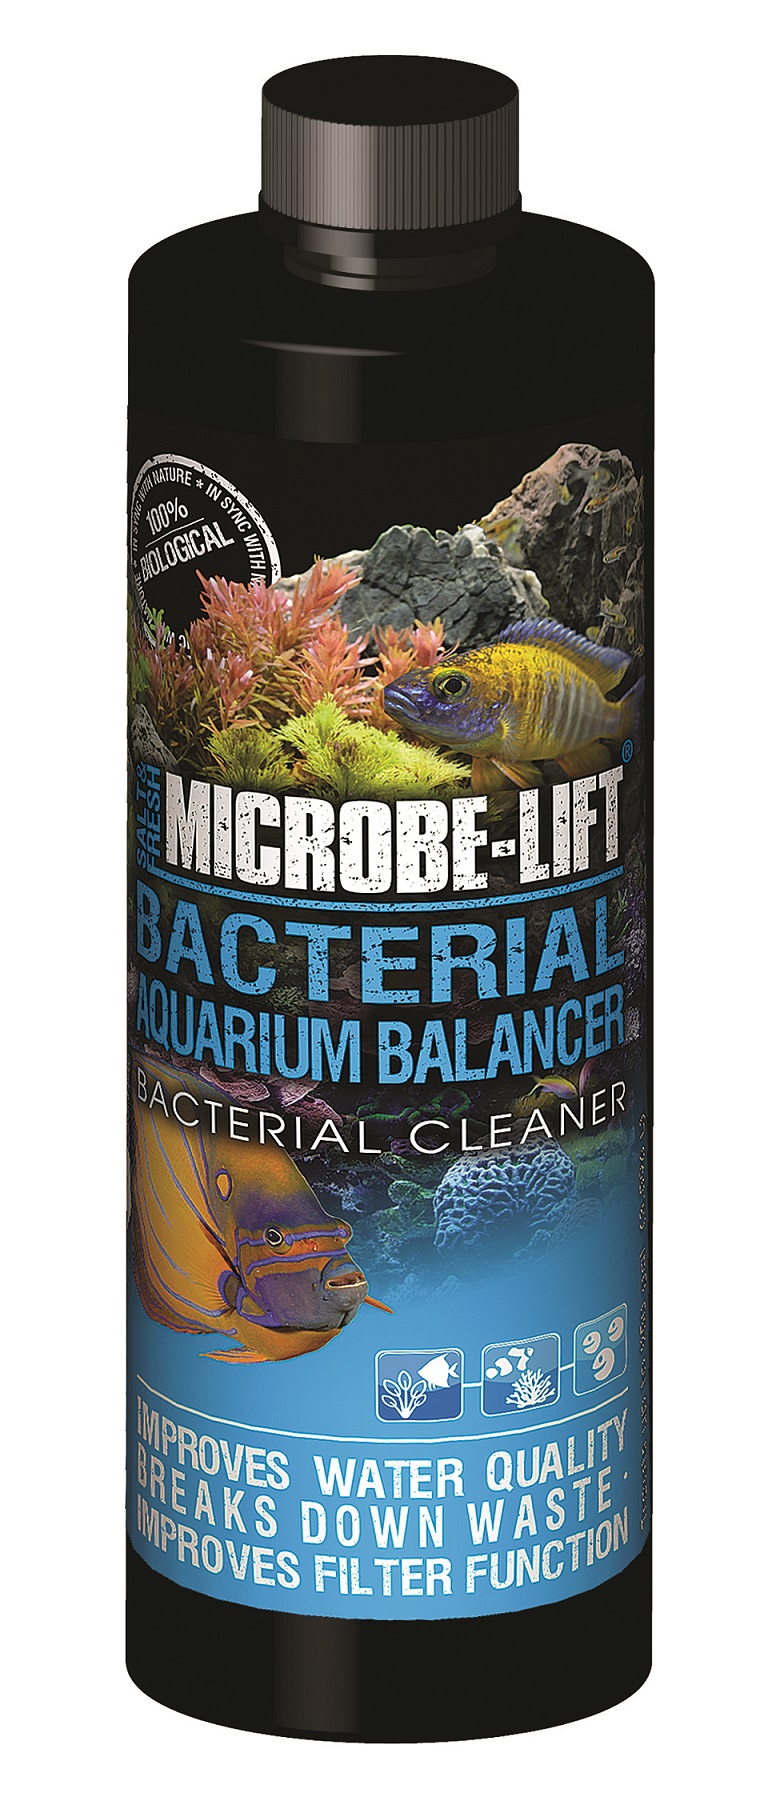 Bacterial Aquarium Balancer